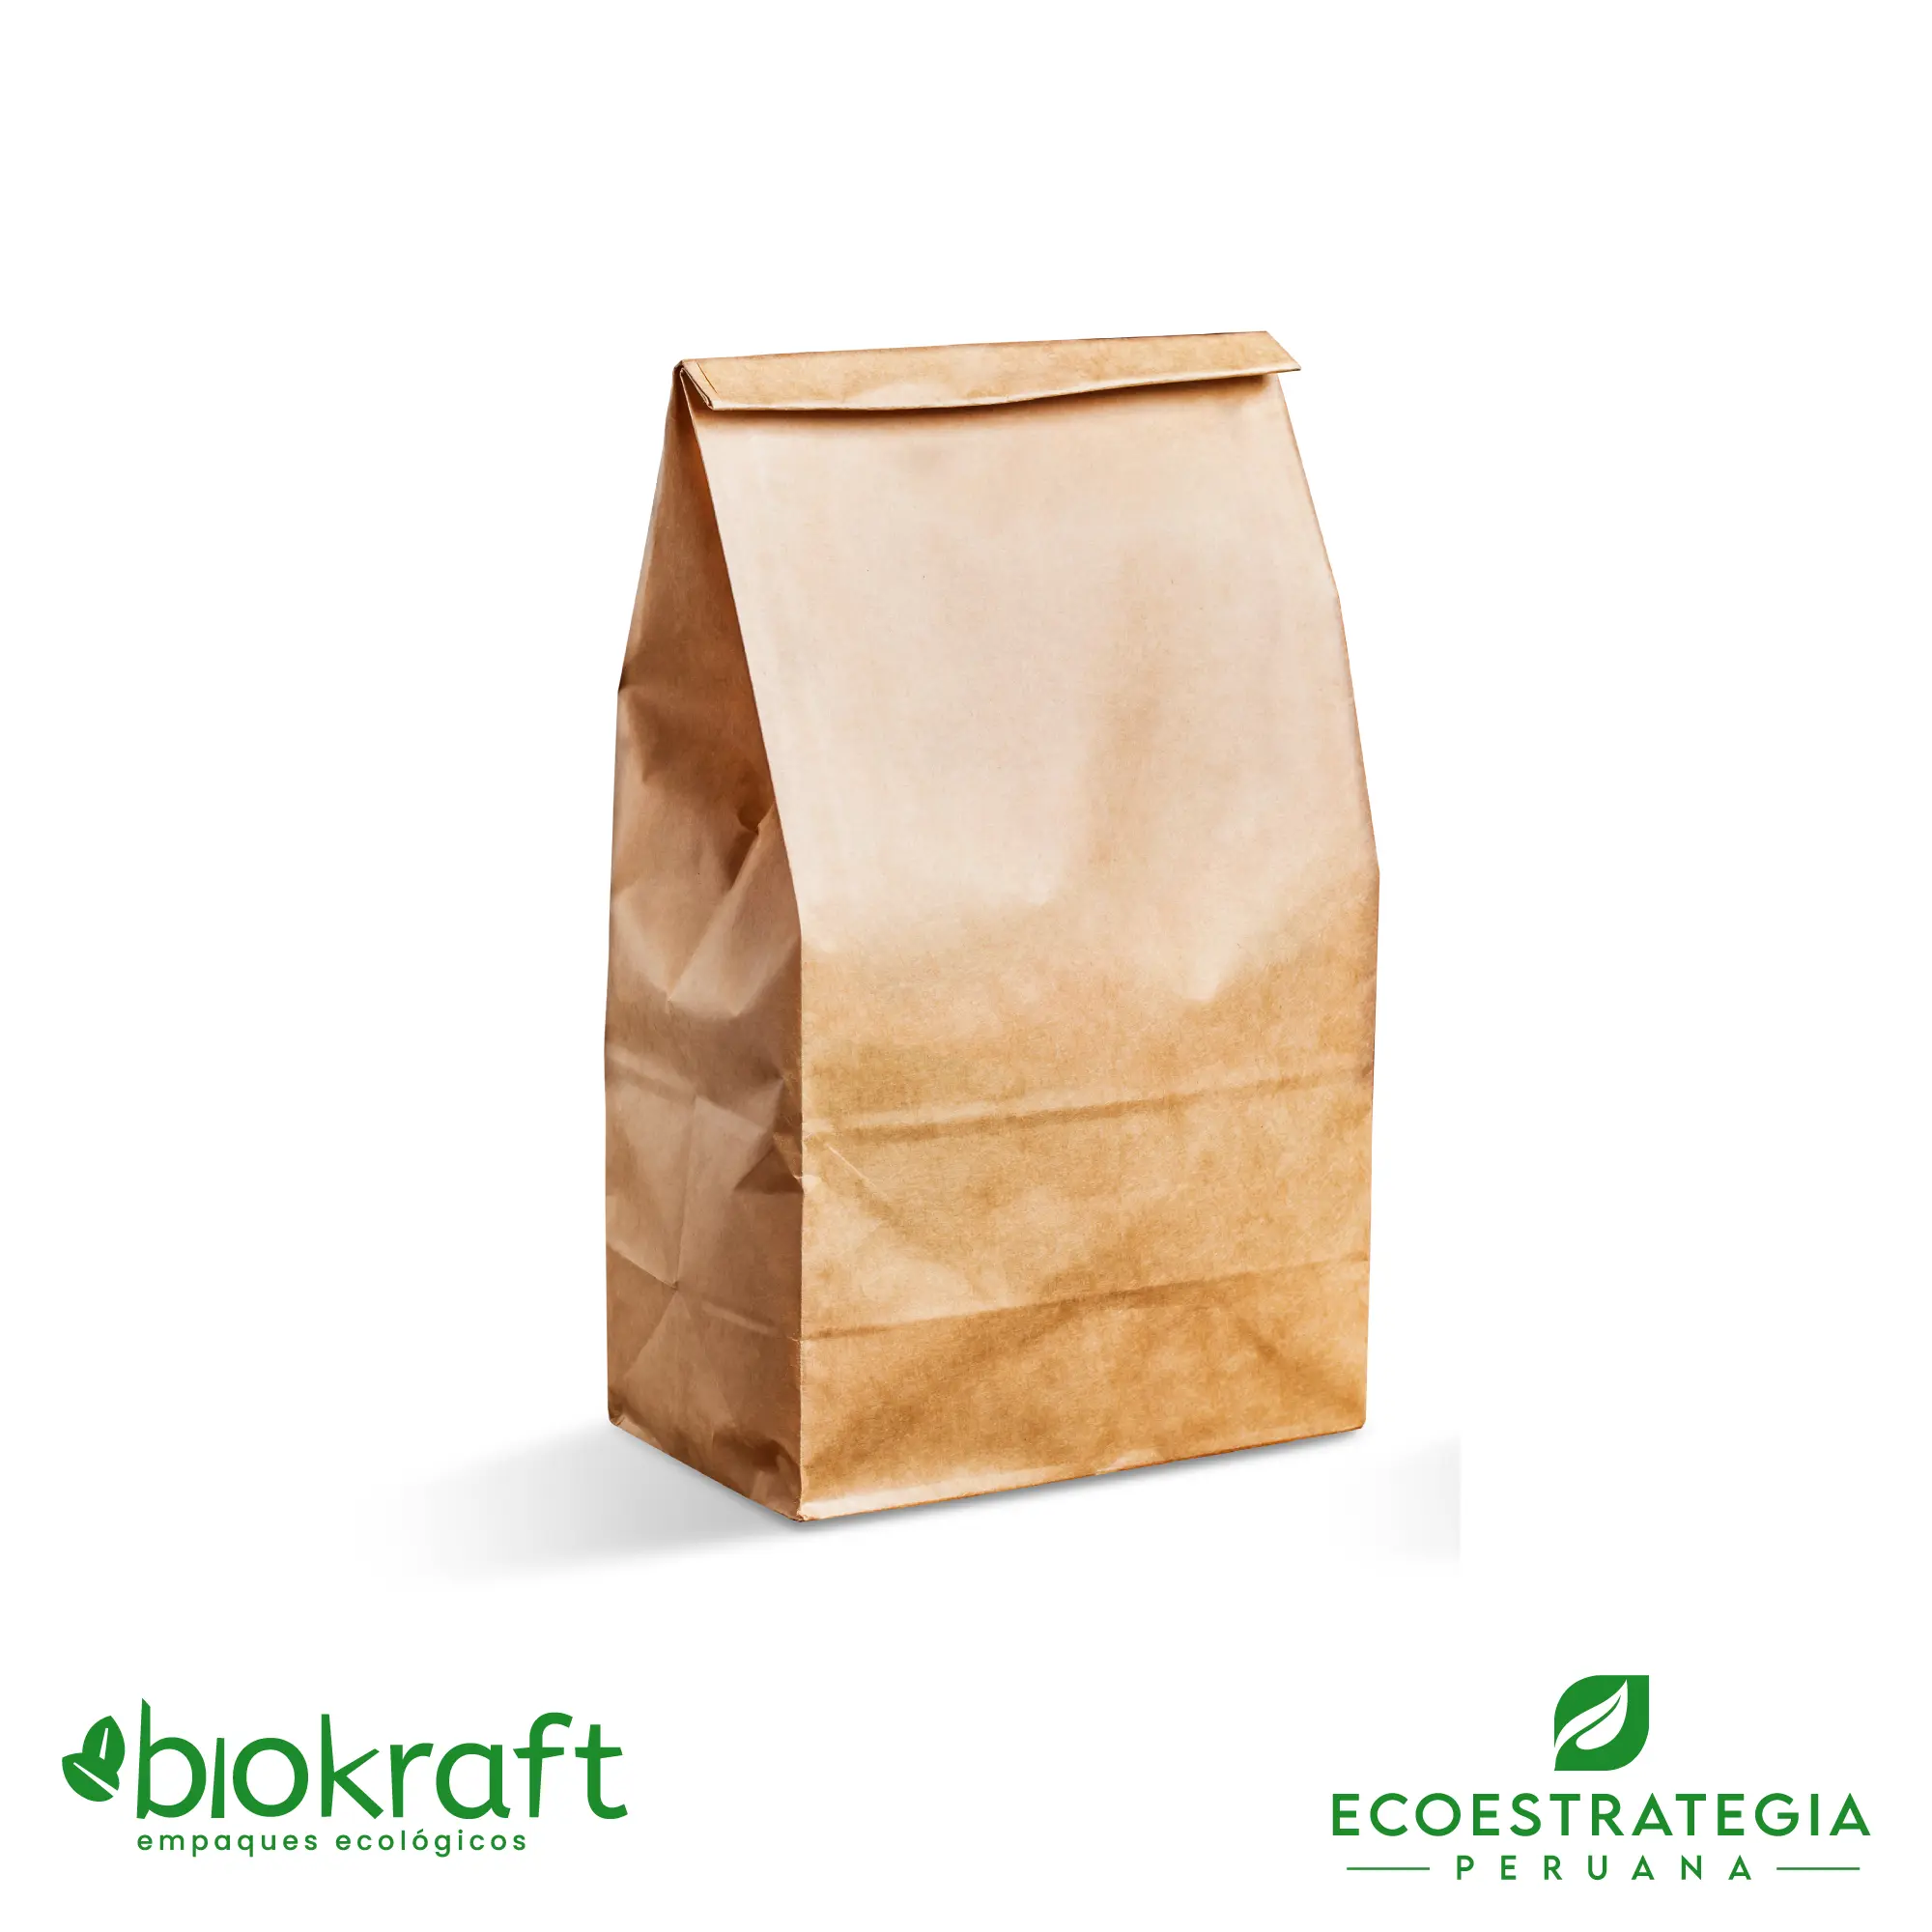 Esta bolsa de papel Kraft tiene un grosor de 80 gr y un peso de 41gr. Bolsa biodegradable de excelente gramaje y medida, ideal para comidas y productos ligeros. Cotiza ahora tus bolsas Kraft número 30